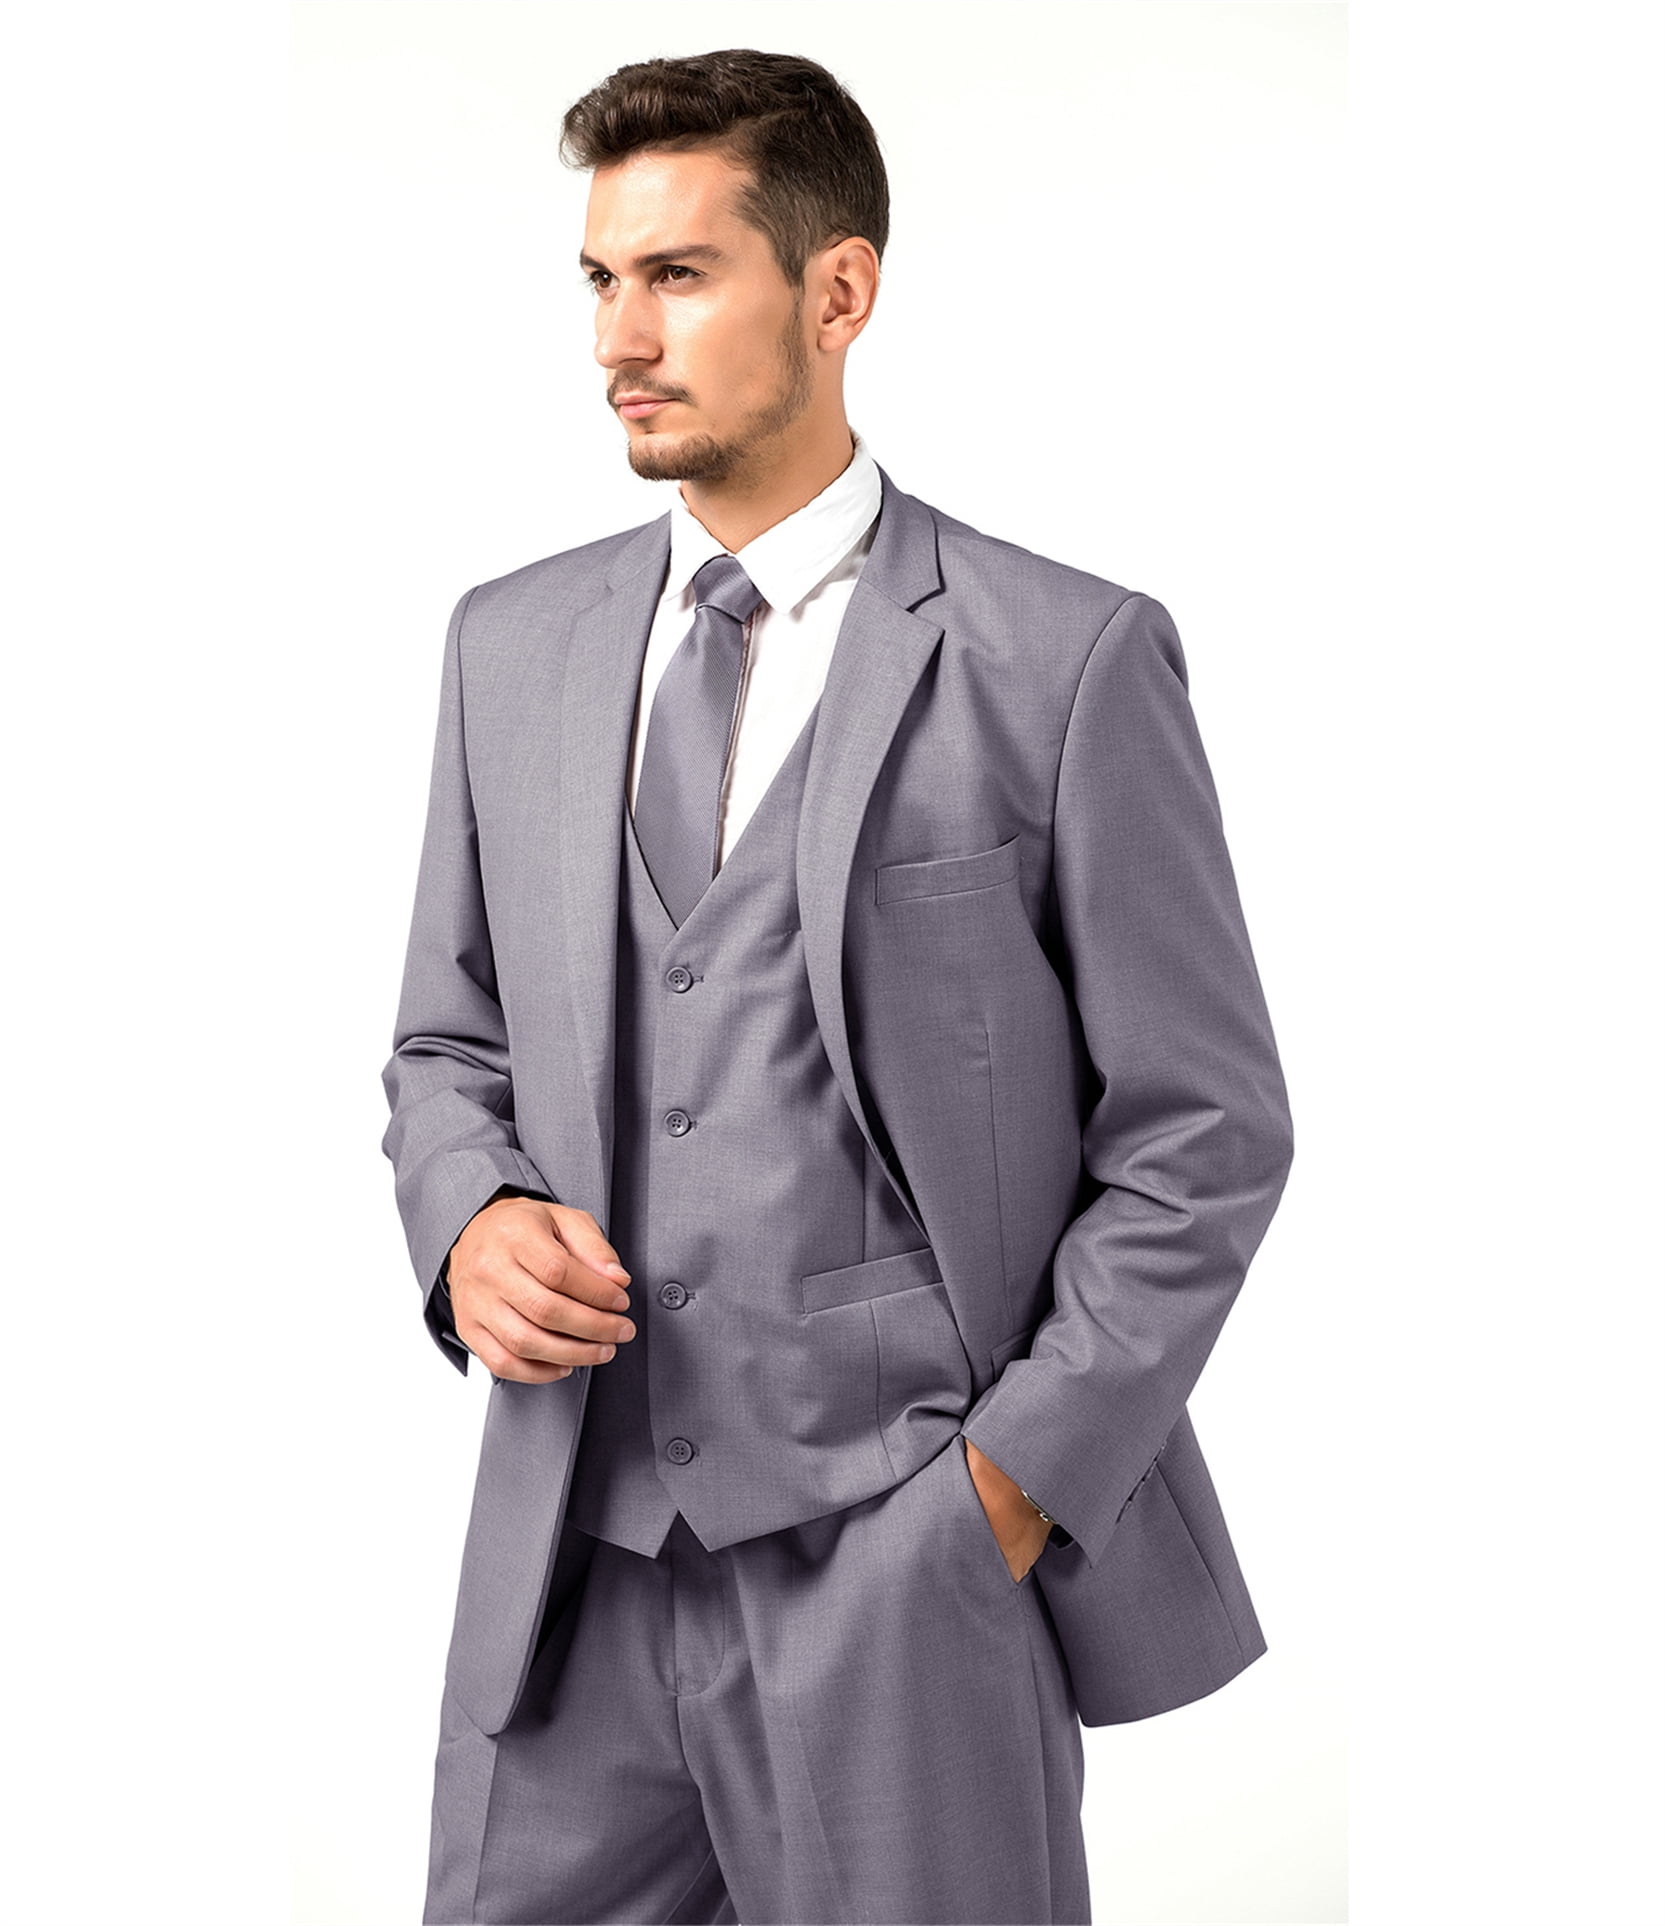 Mens Blue Suit | 3 Piece Wedding Suit for Men